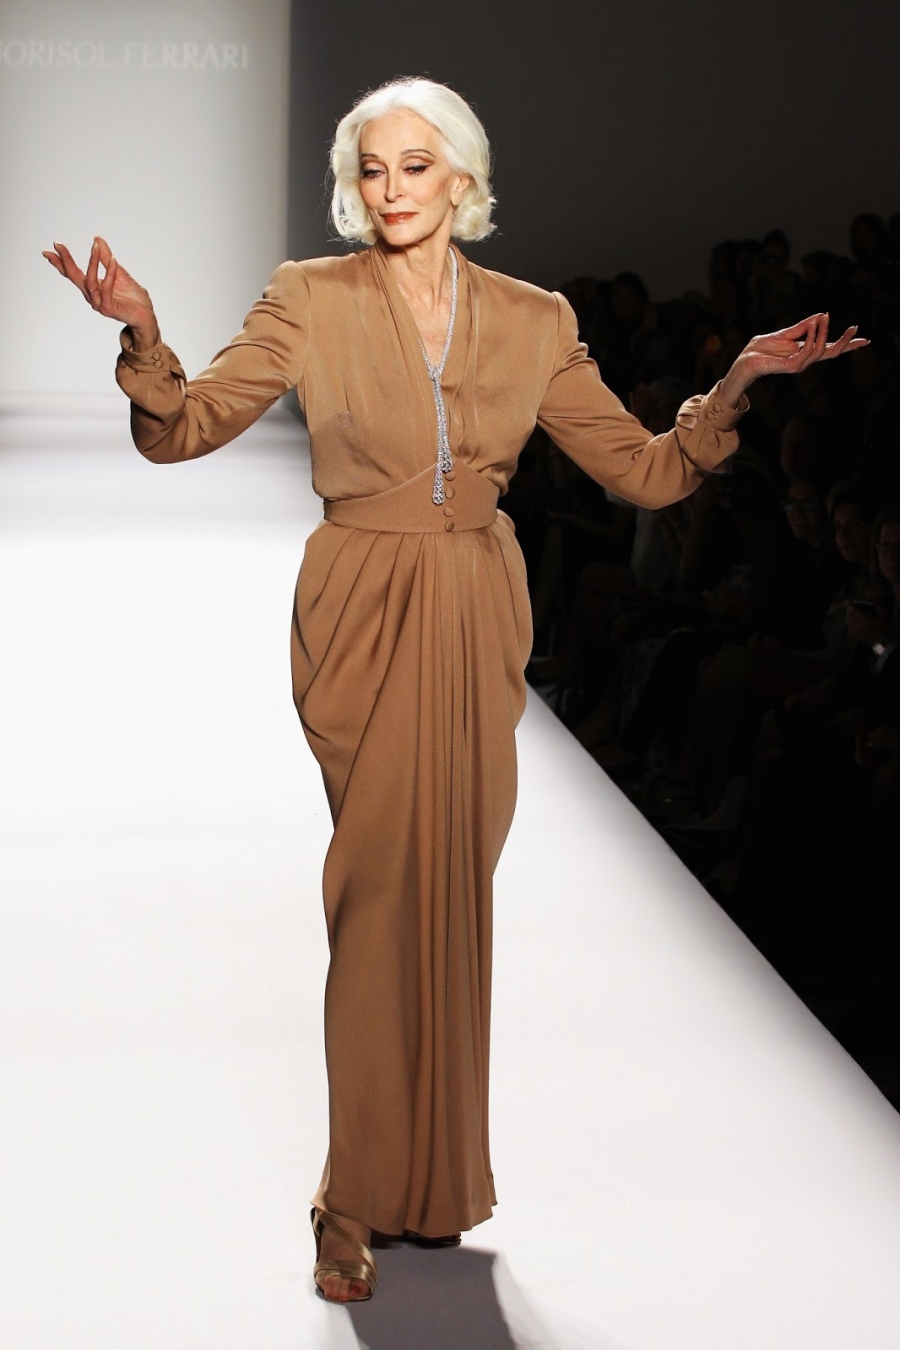 Cách trình diễn của Carmen Dell’ Orefice trên sàn runway được miêu tả bằng hai từ 'thần thái' và 'sang chảnh'.